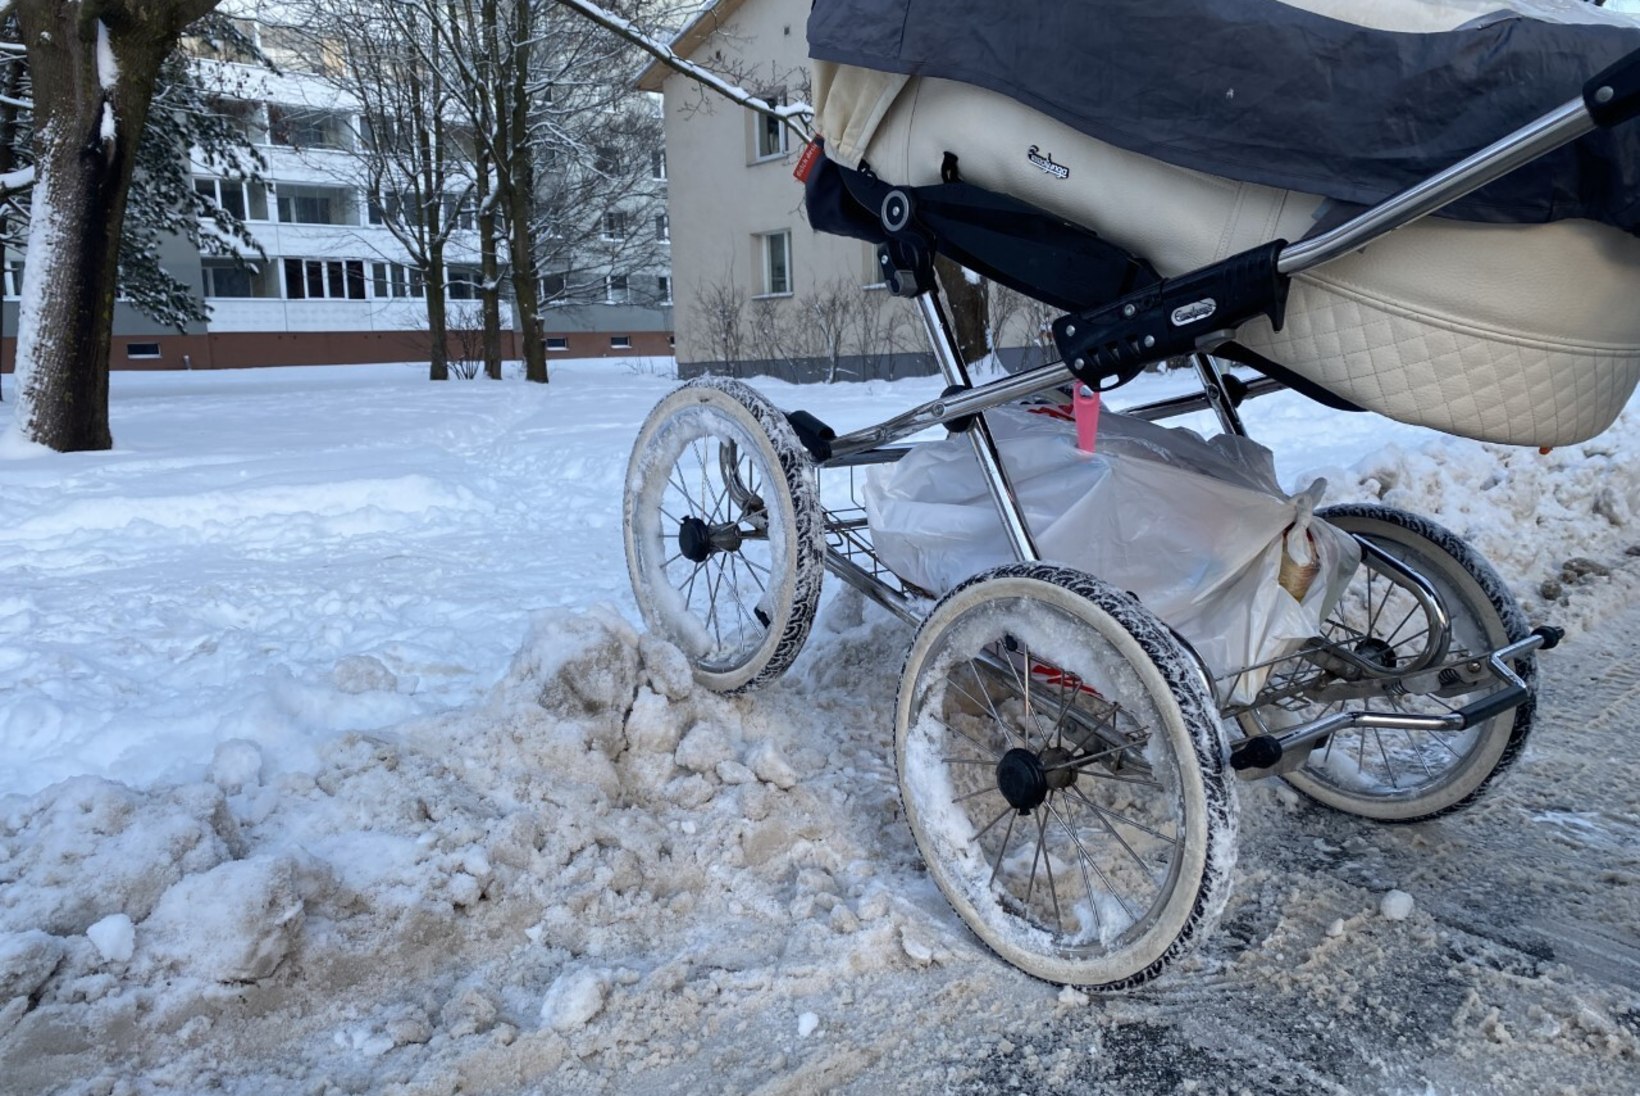 VÕRGUBEEBI PÄEVIK | Kas vankritega emad ja ratastooliga liiklejad ei ole väärt normaalseid teeolusid ka talvel?